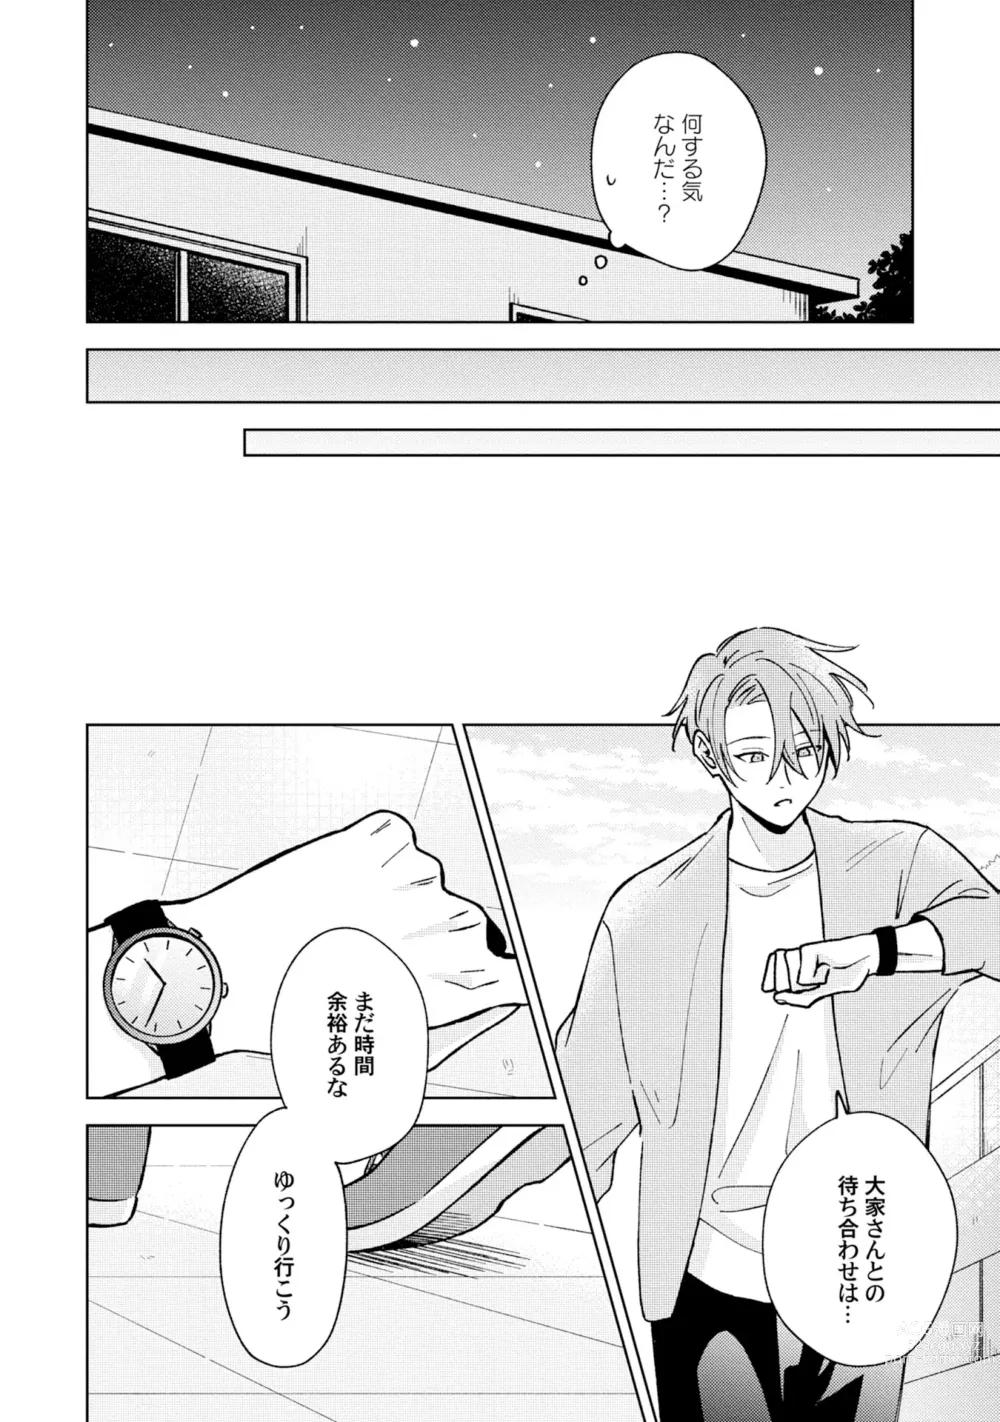 Page 8 of manga Toho 3-byou no Trouble Love Room 5